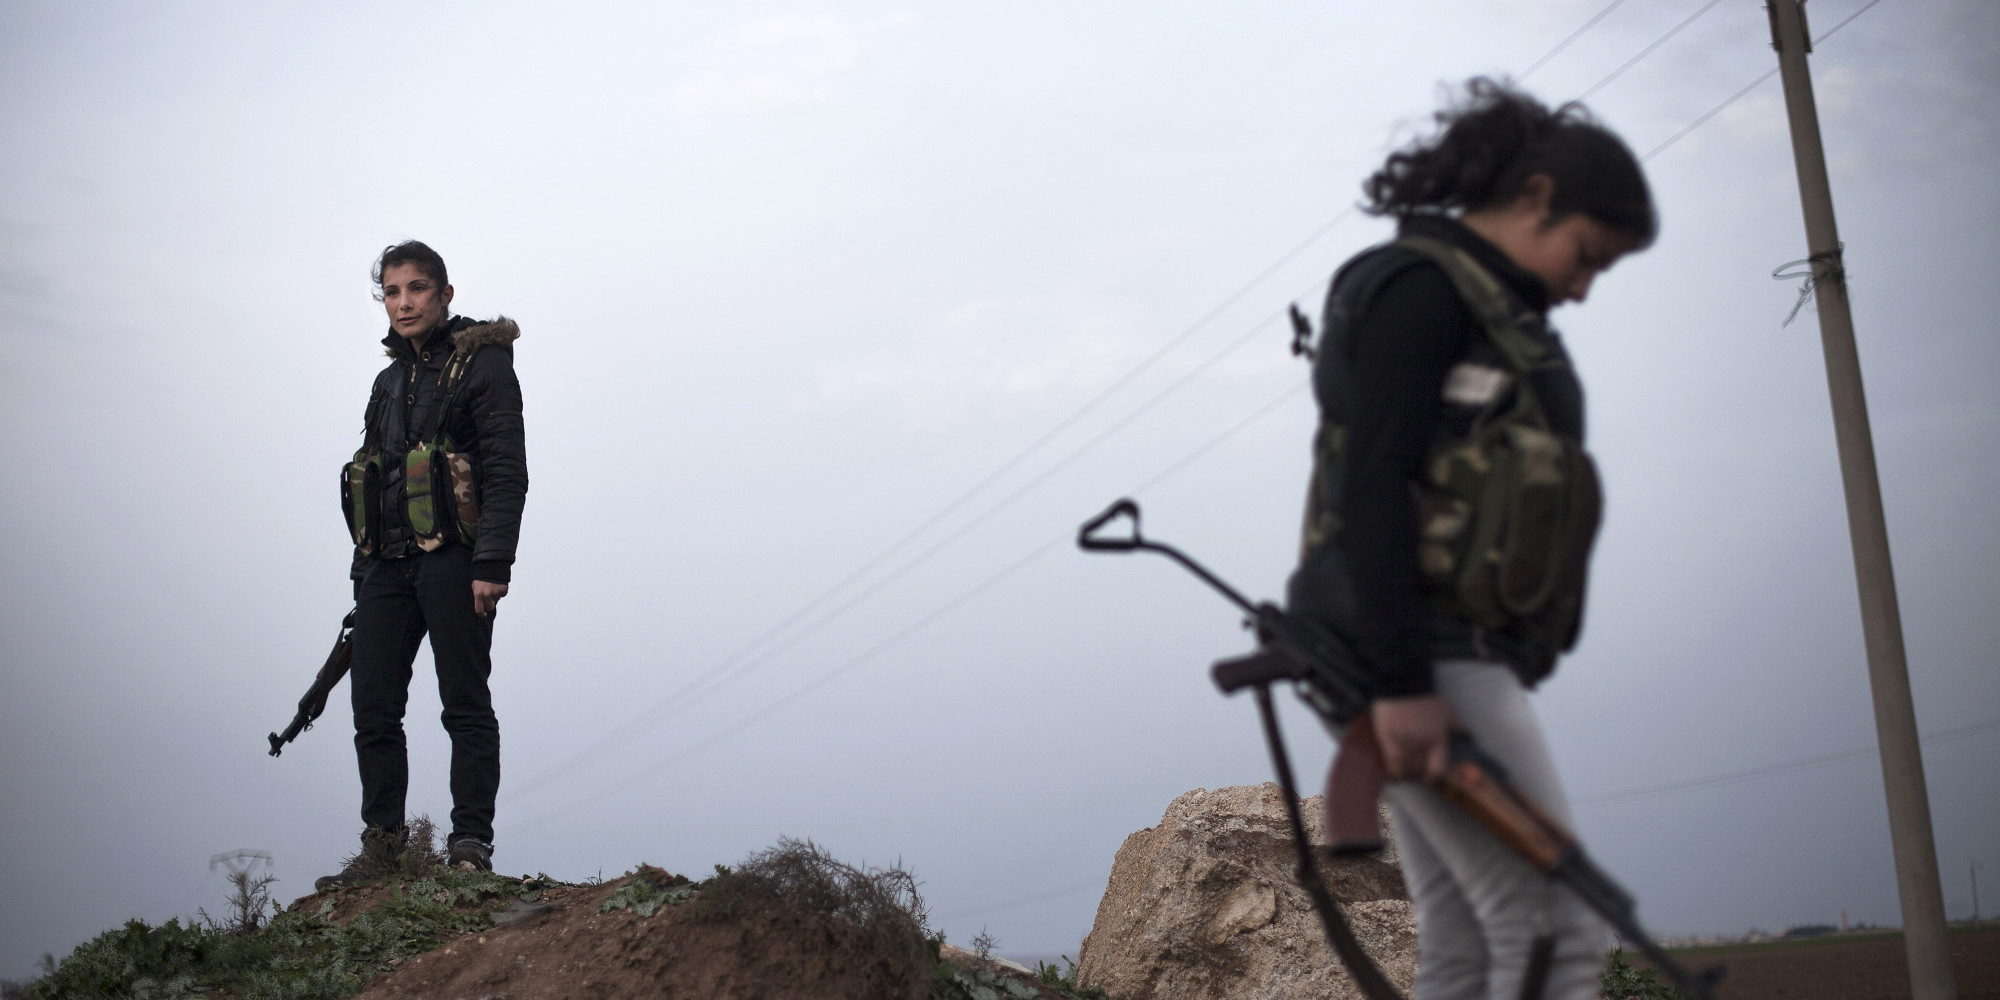 Βίντεο: Κούρδοι αντάρτες περικυκλώνουν Τούρκους στρατιώτες και τους παίρνουν τα όπλα (φωτό, βίντεο)